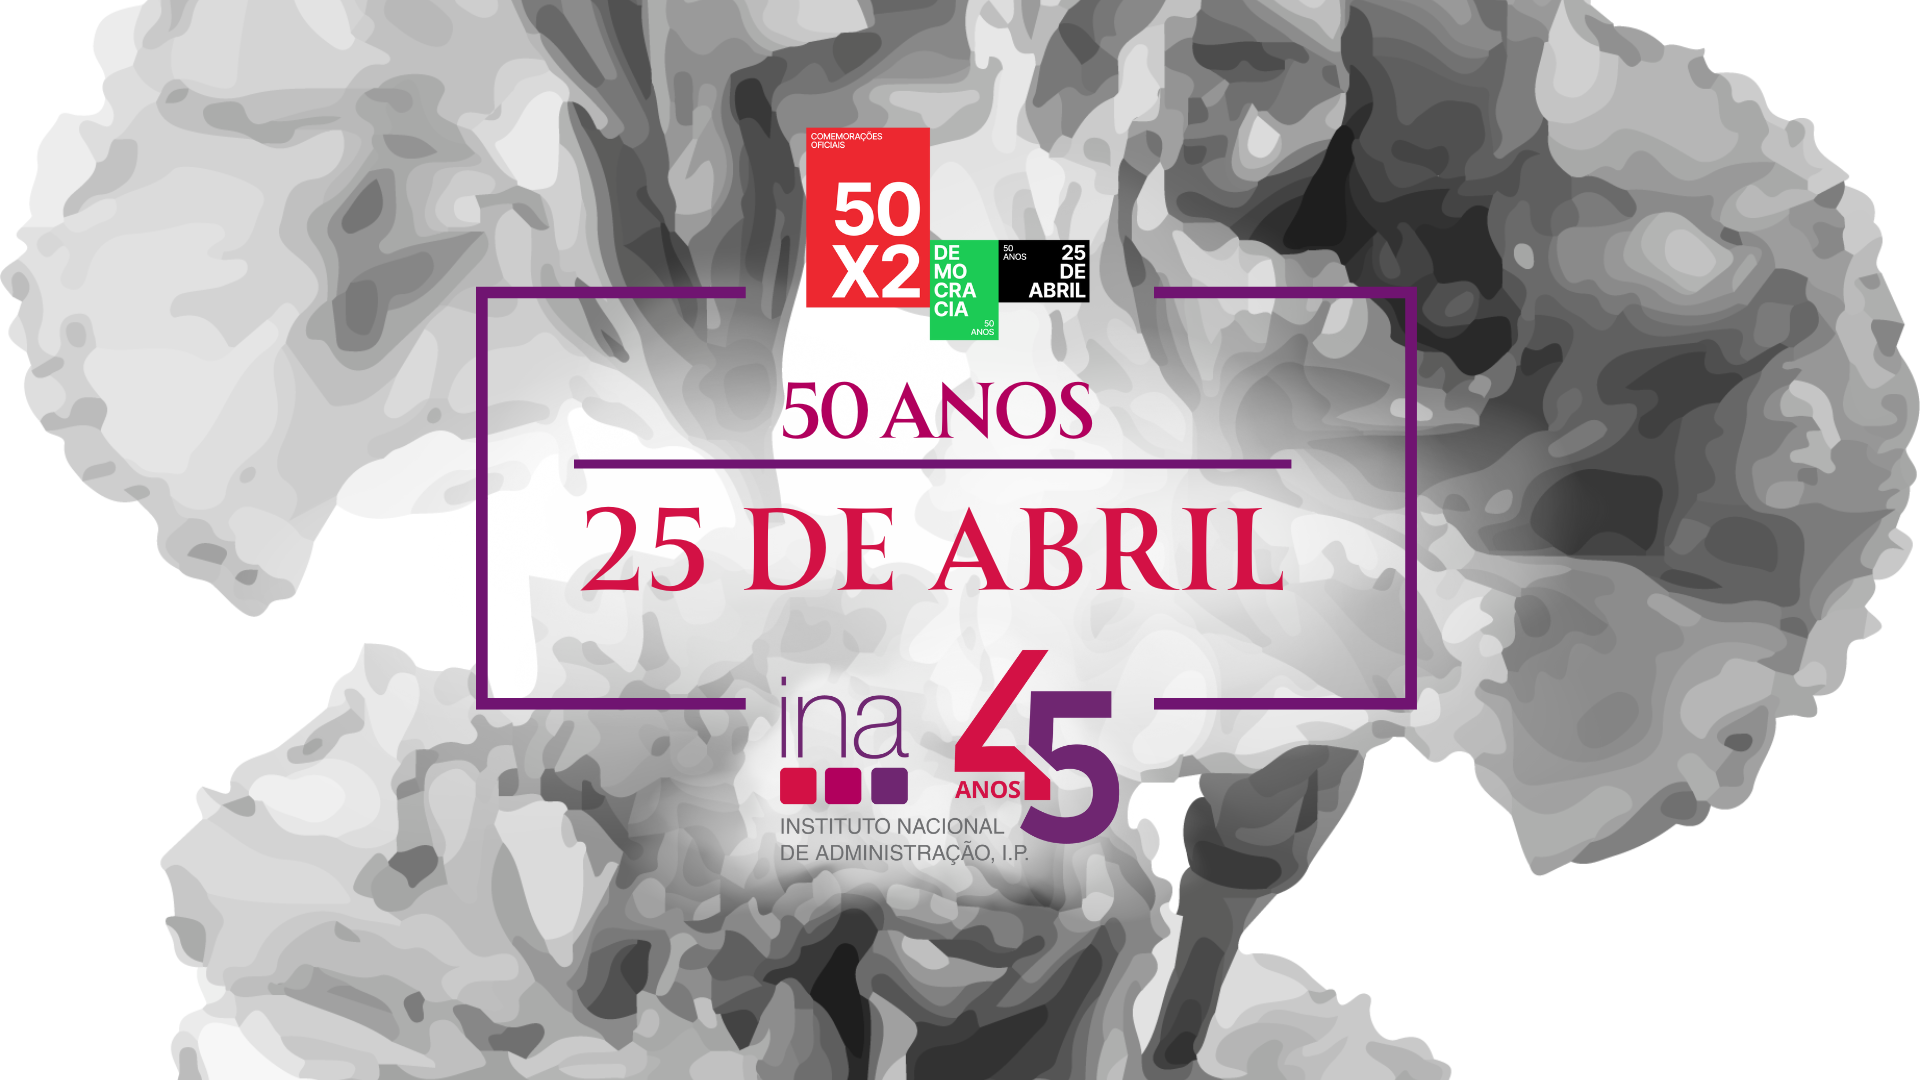 Capa Oficial do Evento Exposição fotográfica 45 anos INA e 50 anos do 25 de abril  